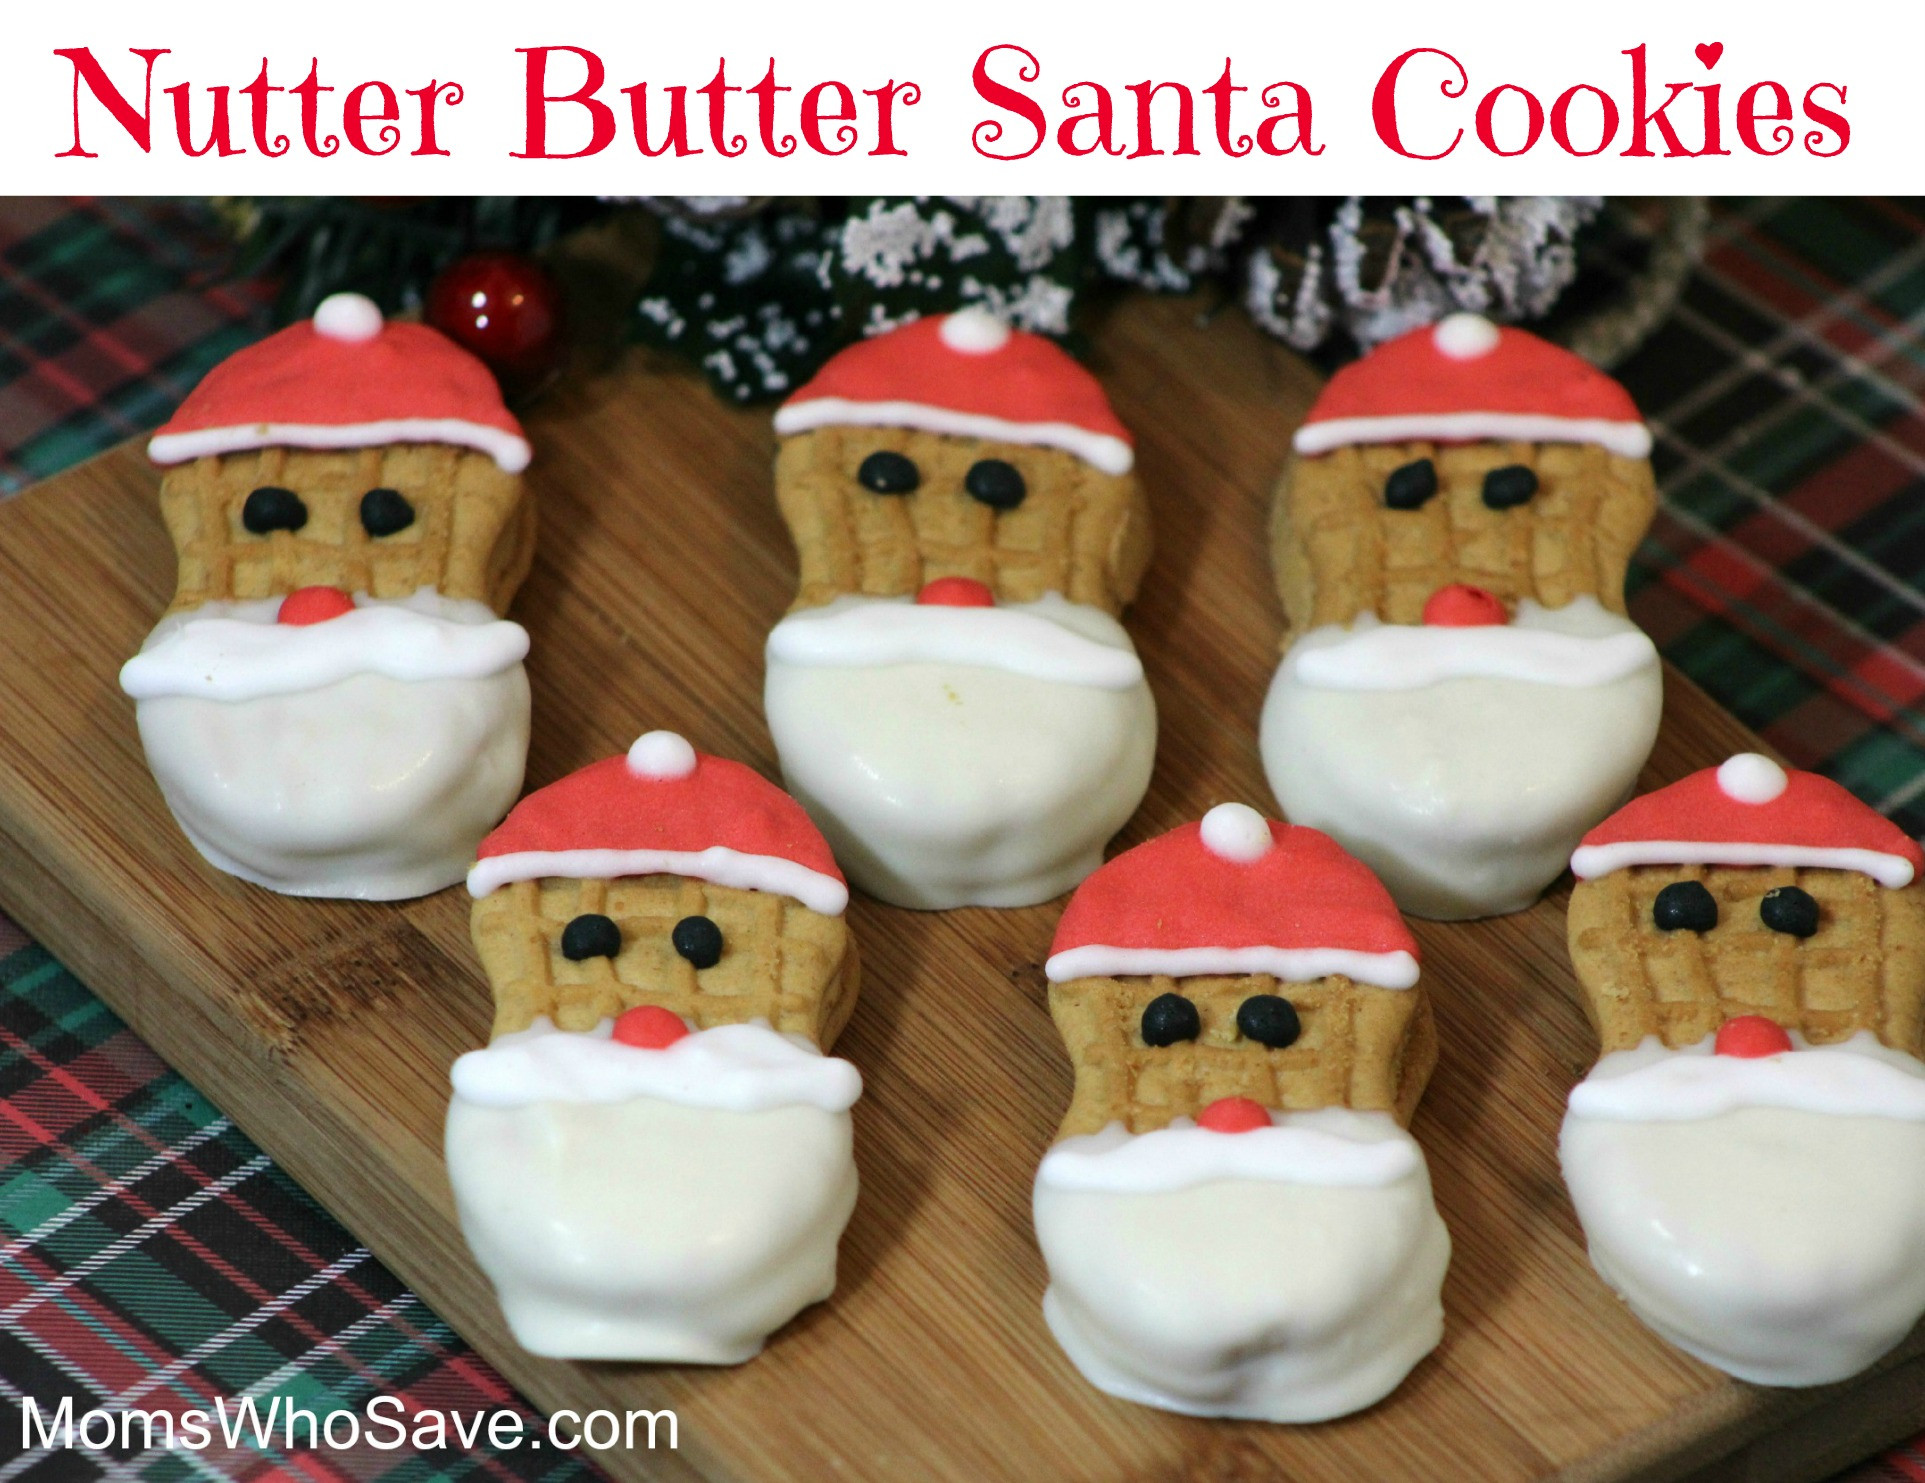 Nutter Butter Christmas Cookies
 Nutter Butter Santa Cookies